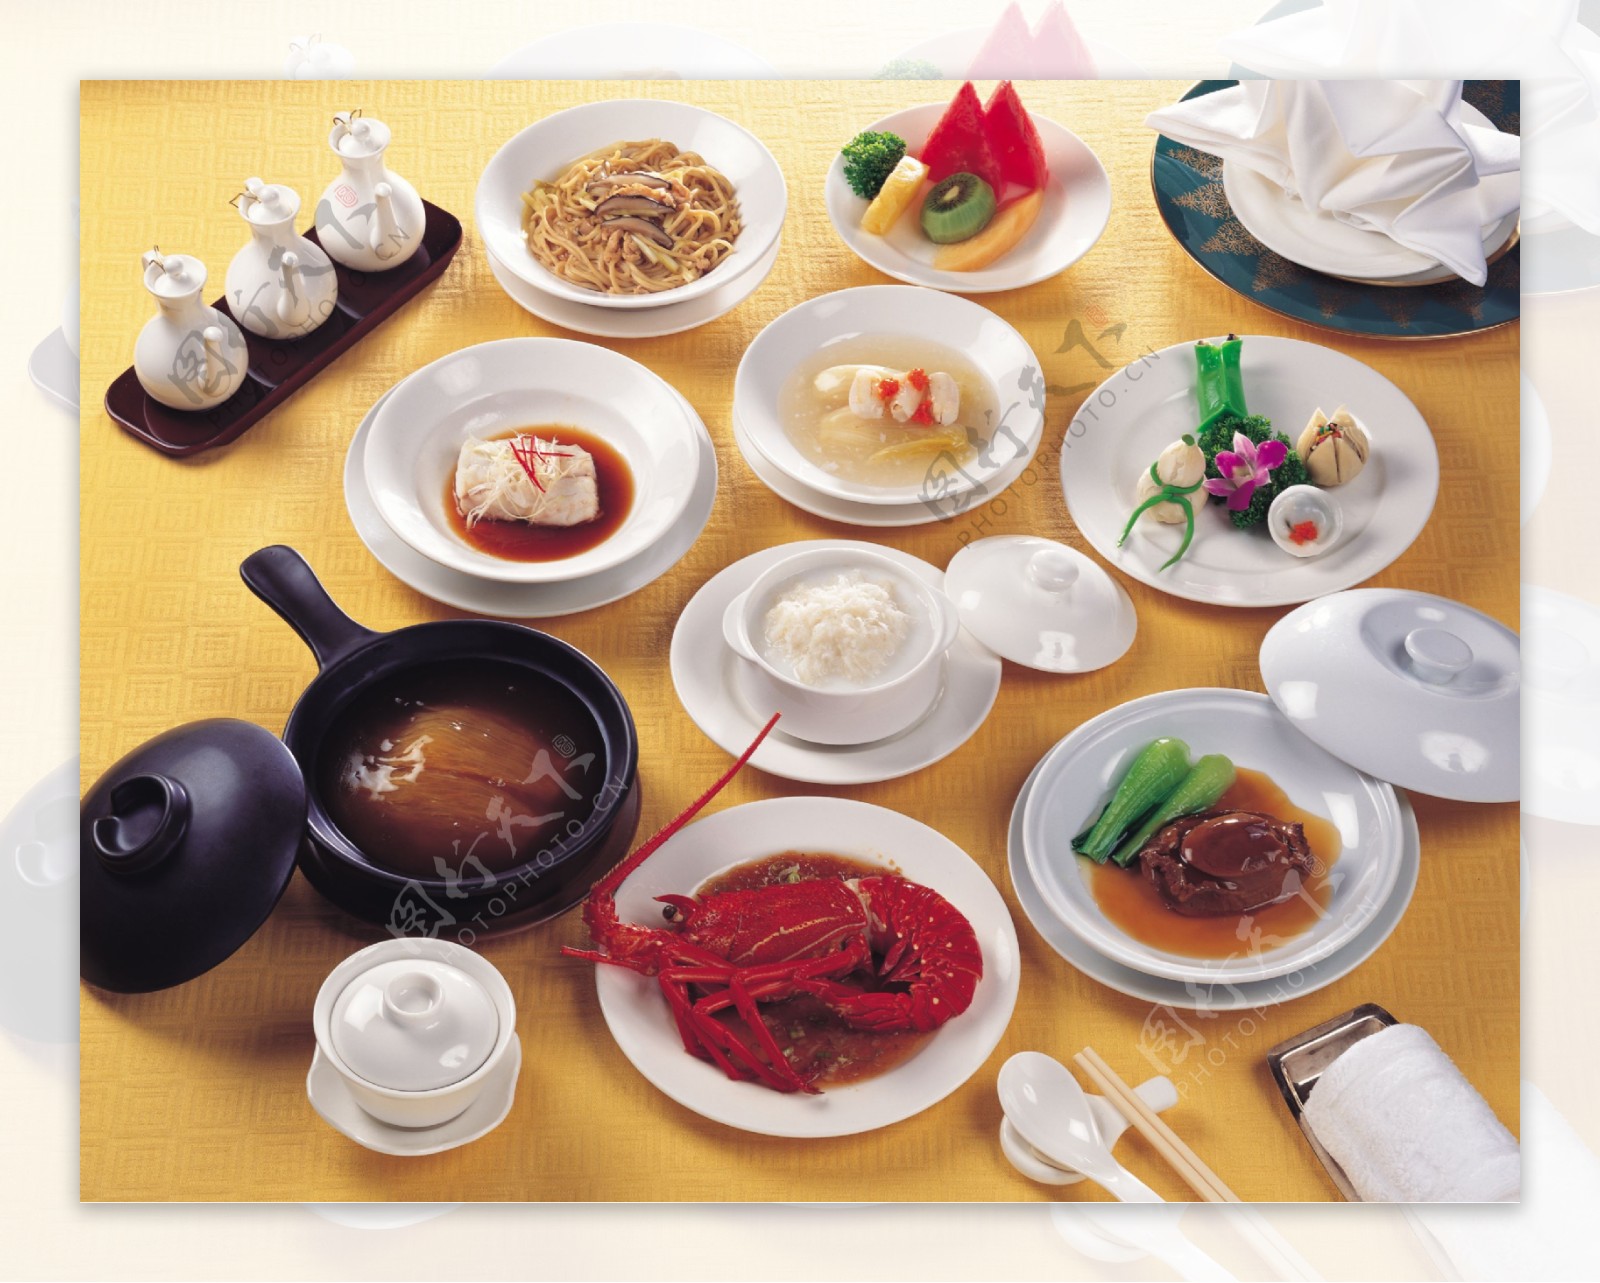 五星大饭店精品中式国宴菜肴图片